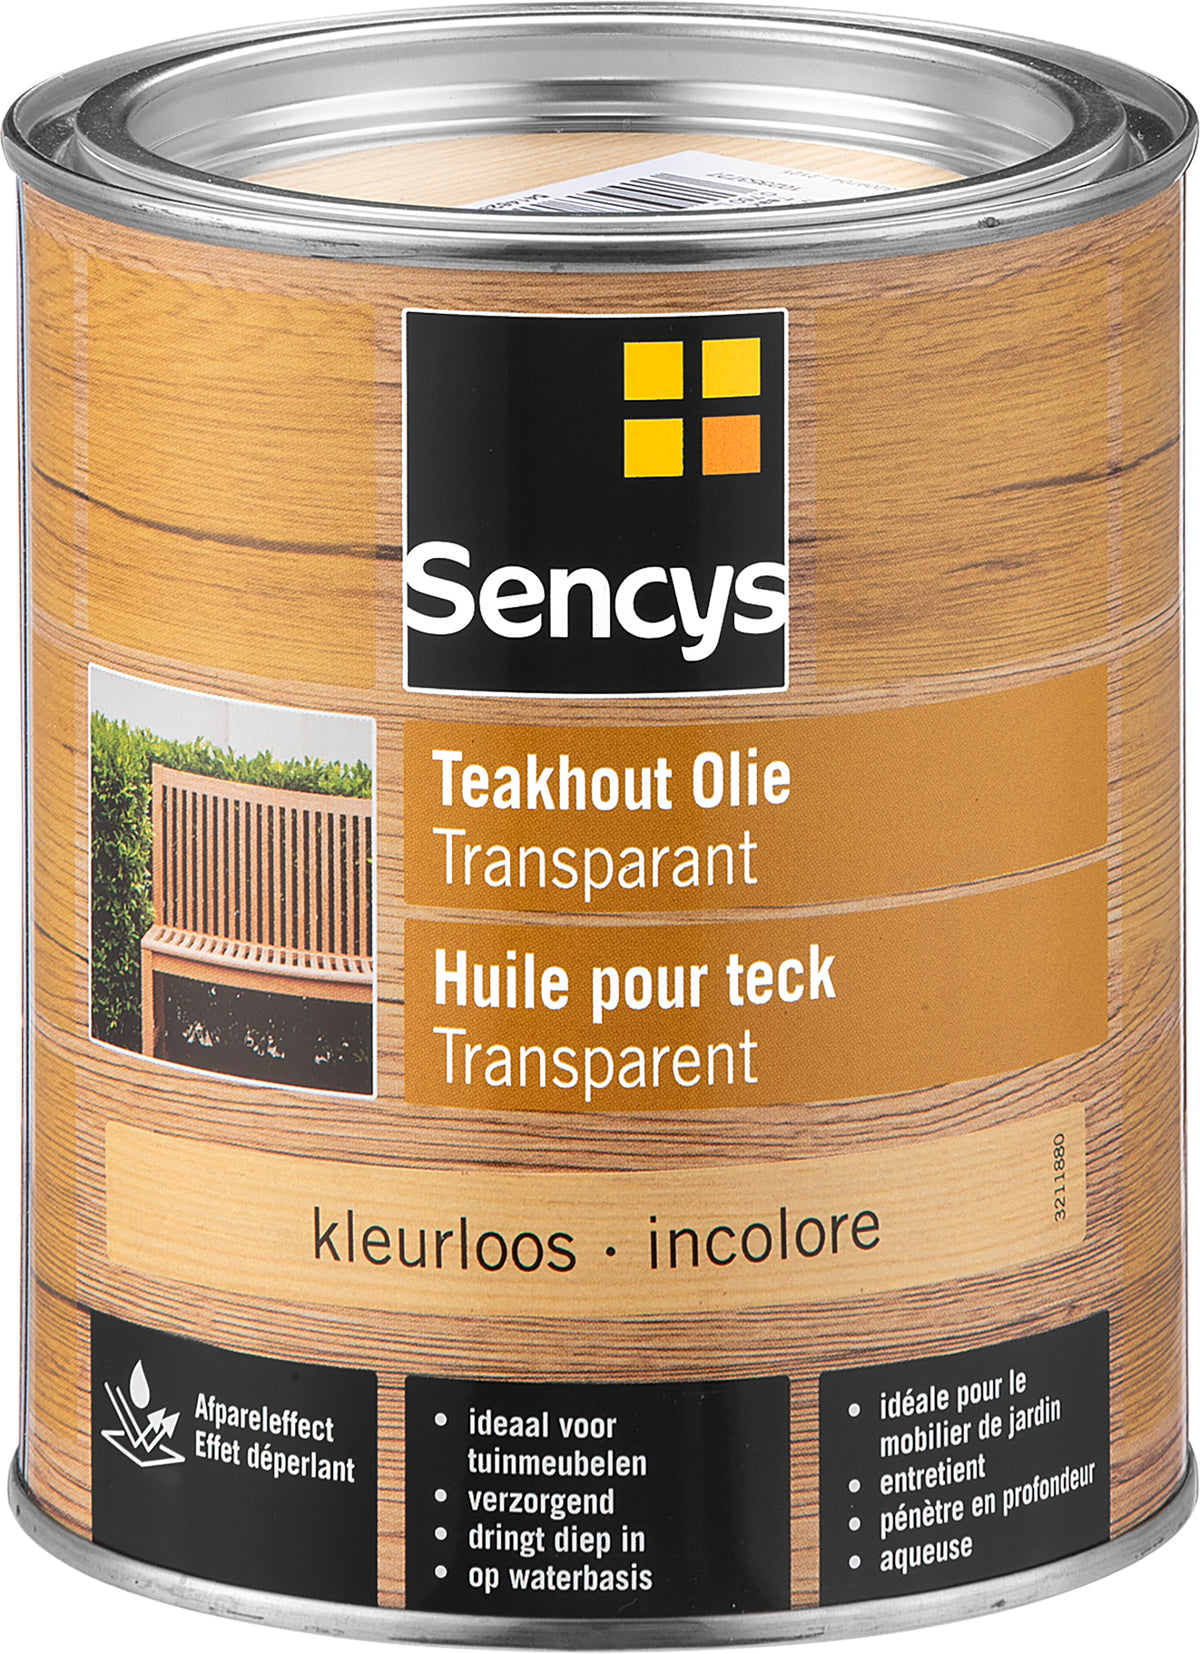 Sencys teakolie kleurloos 750ml